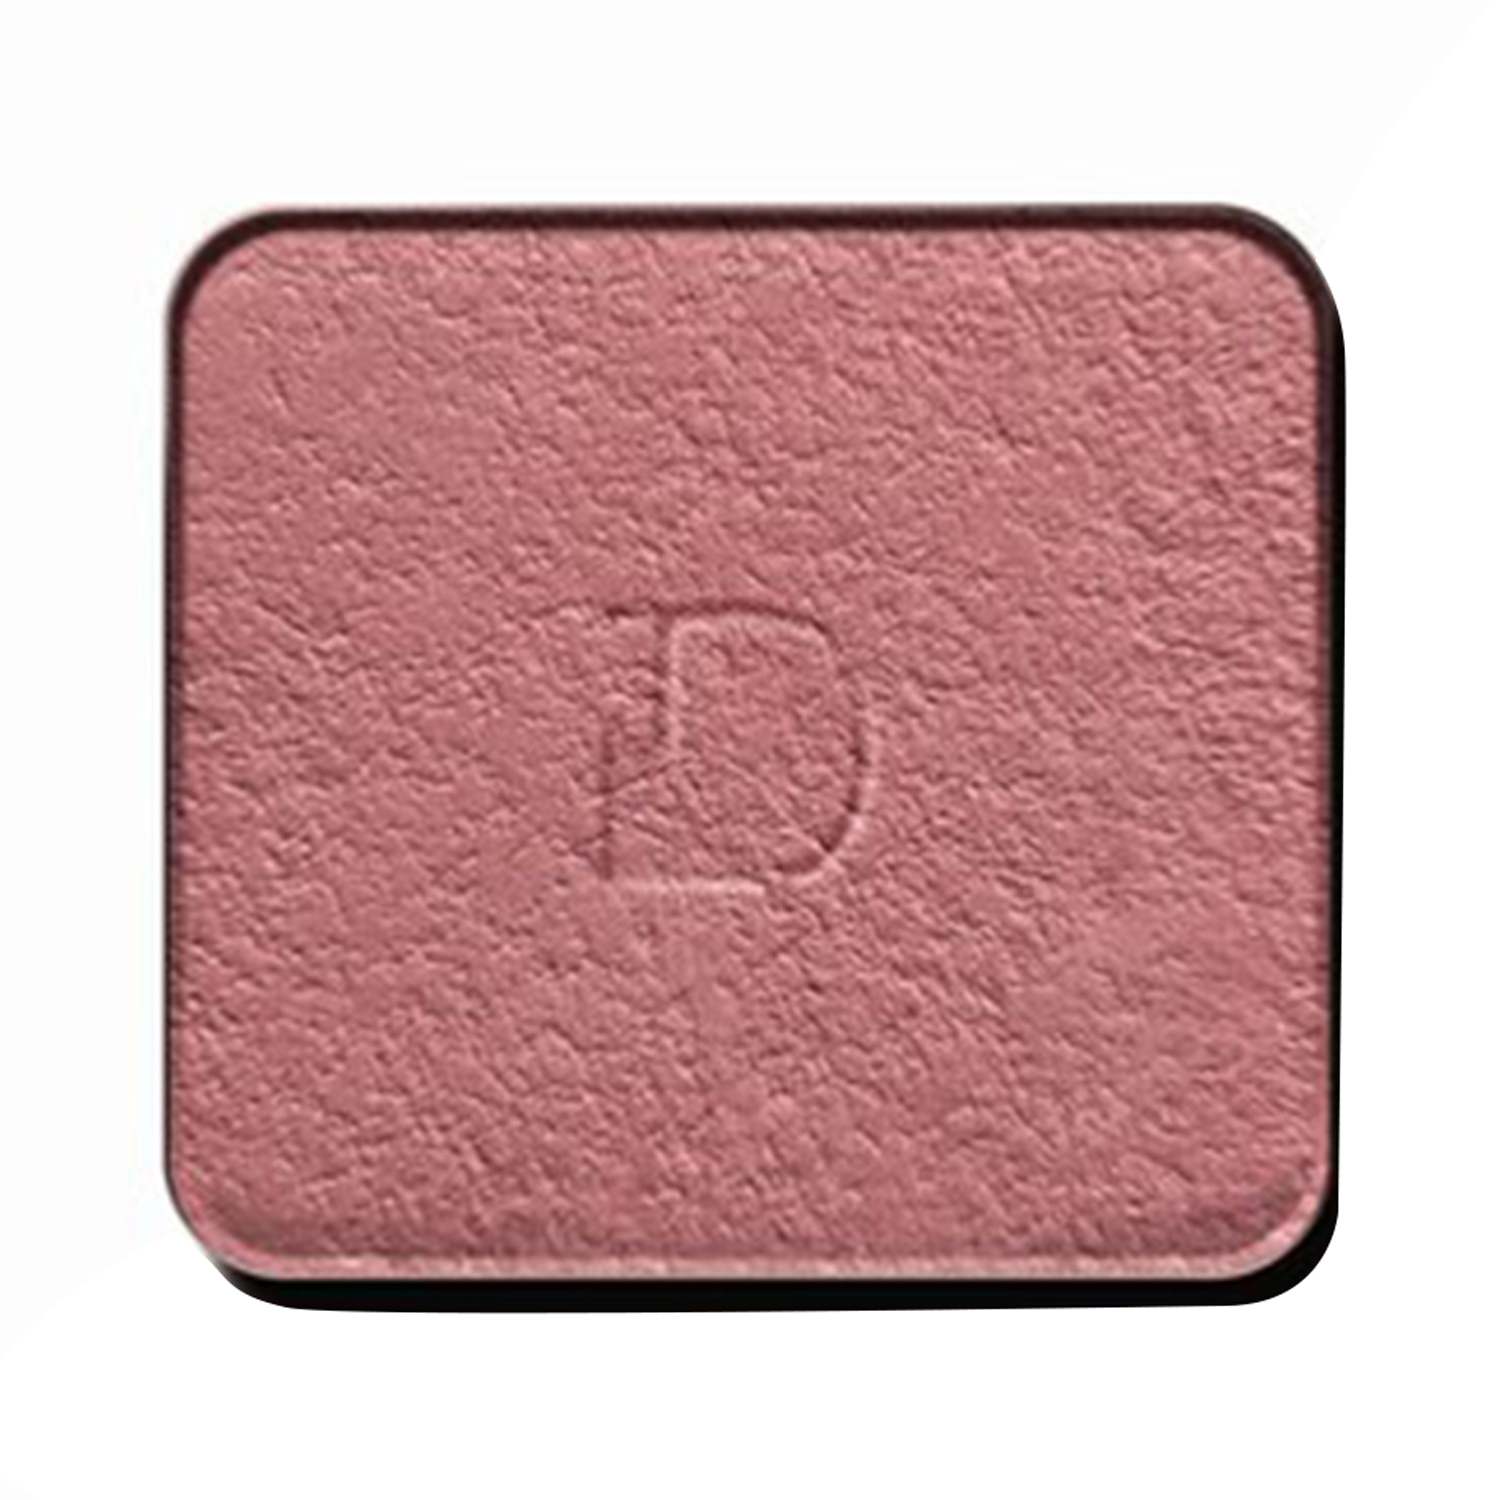 Diego Dalla Palma Milano | Diego Dalla Palma Milano Matt Eyeshadow - 168 Antique Pink (2g)